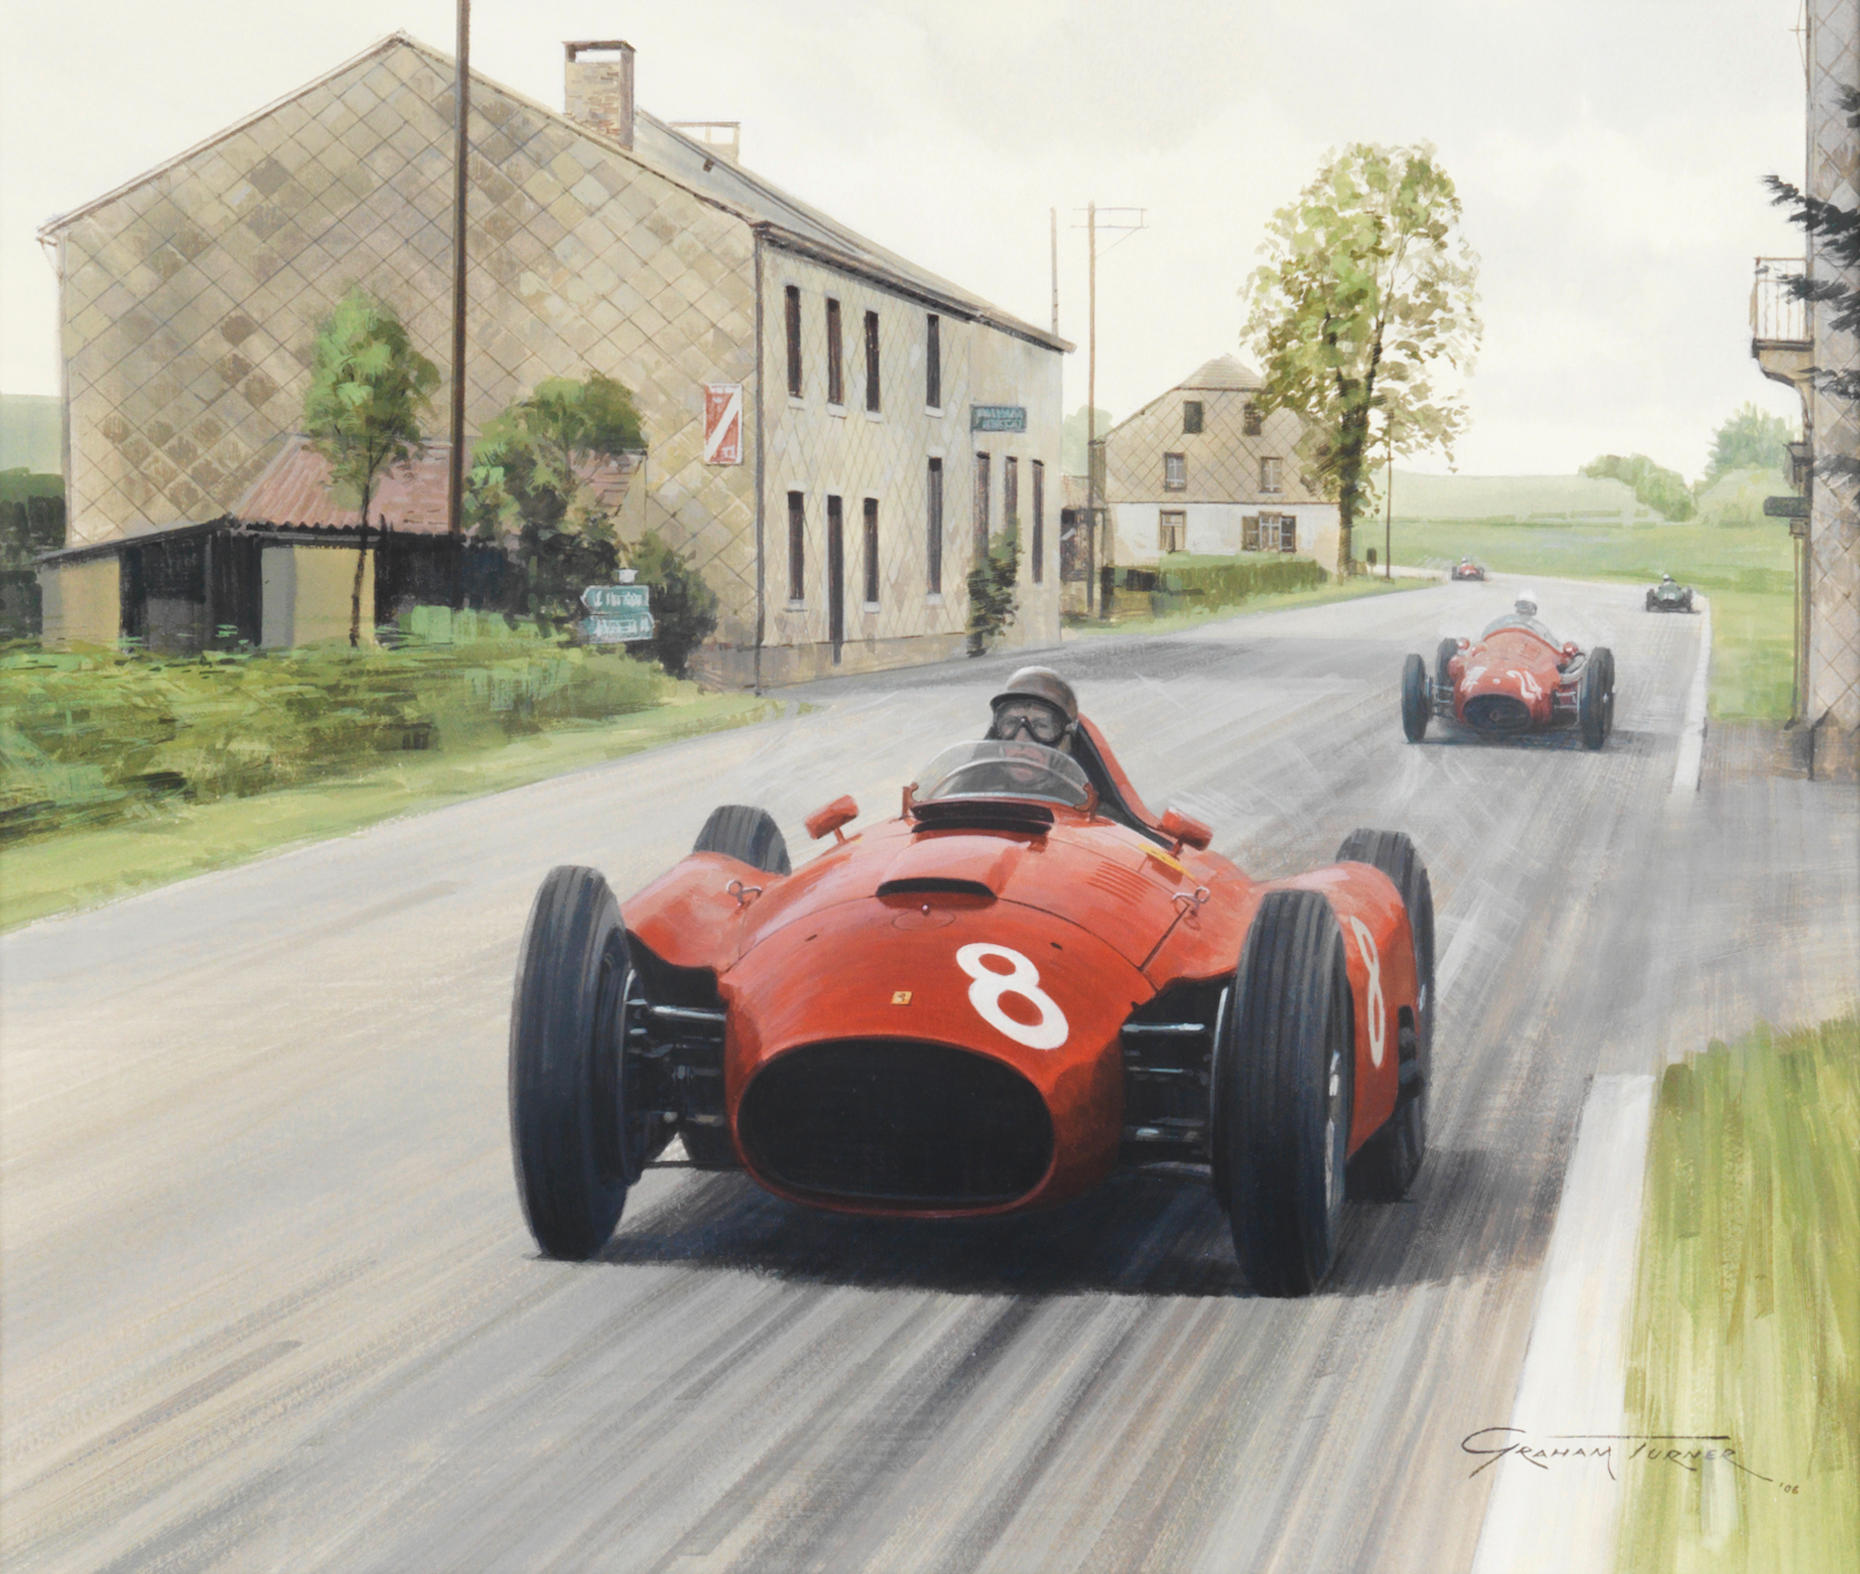 Bonhams : Graham Turner (British, 1964-), '1956 Belgian Grand Prix',